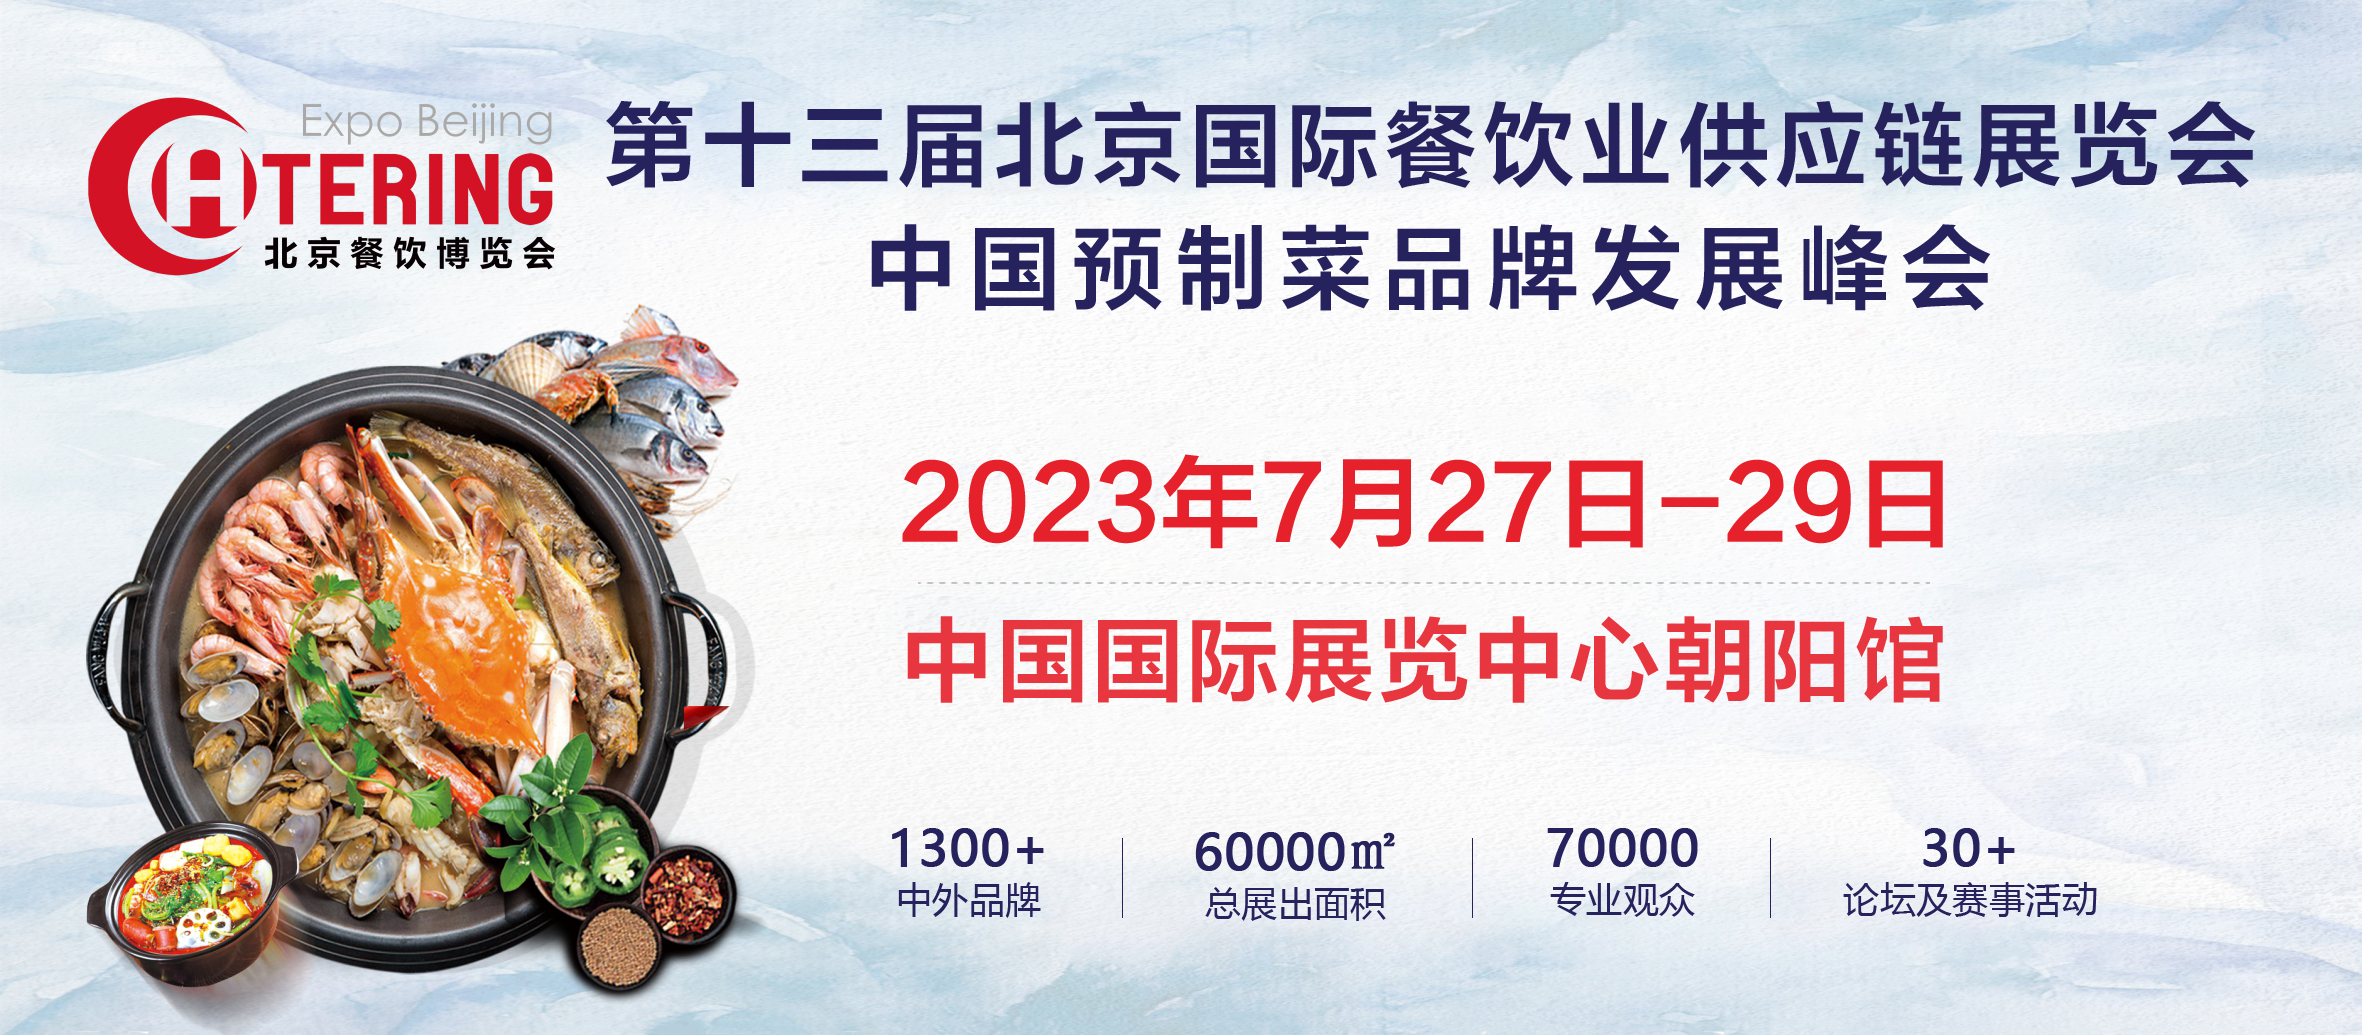 展商推介丨黄山市绿保工贸有限公司将亮相2023北京餐博会(图1)